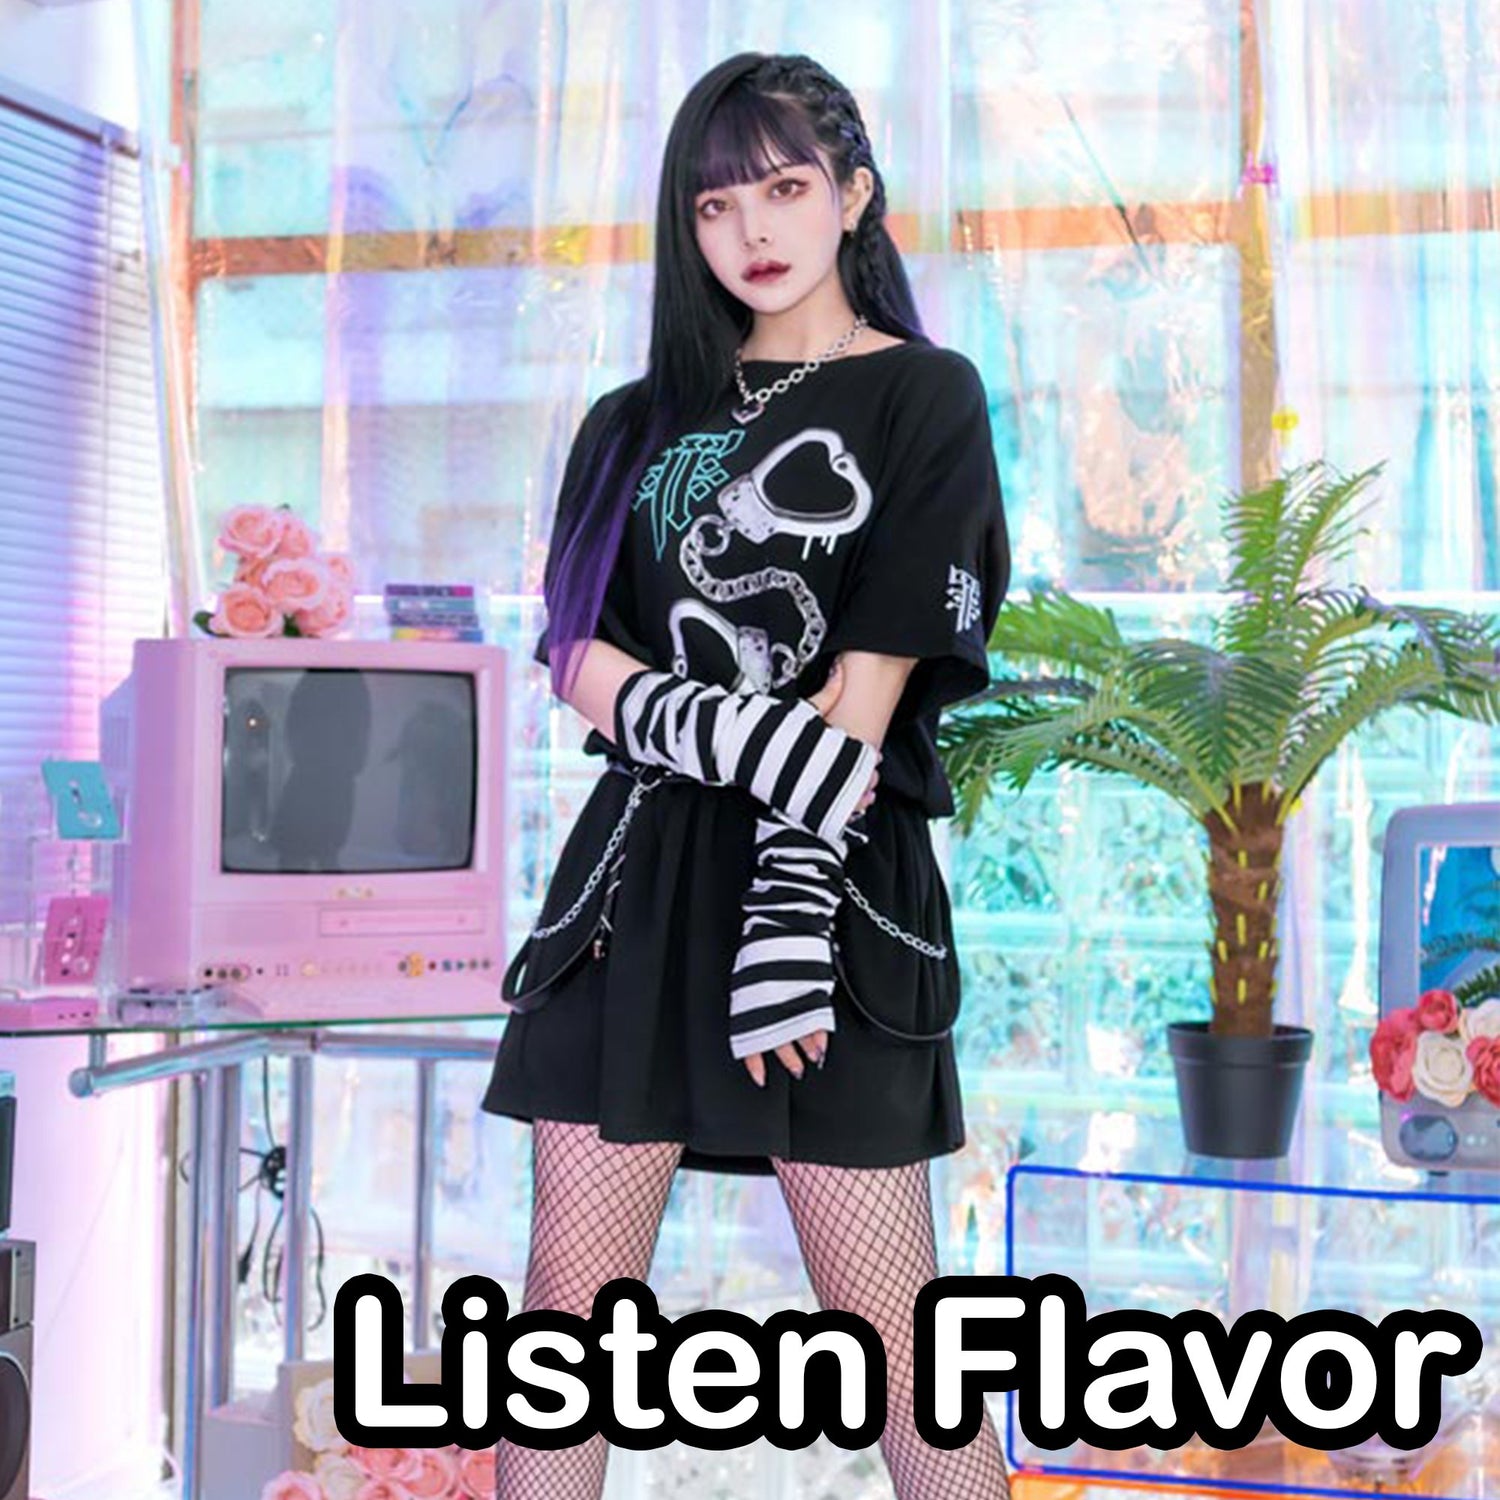 Listen Flavor